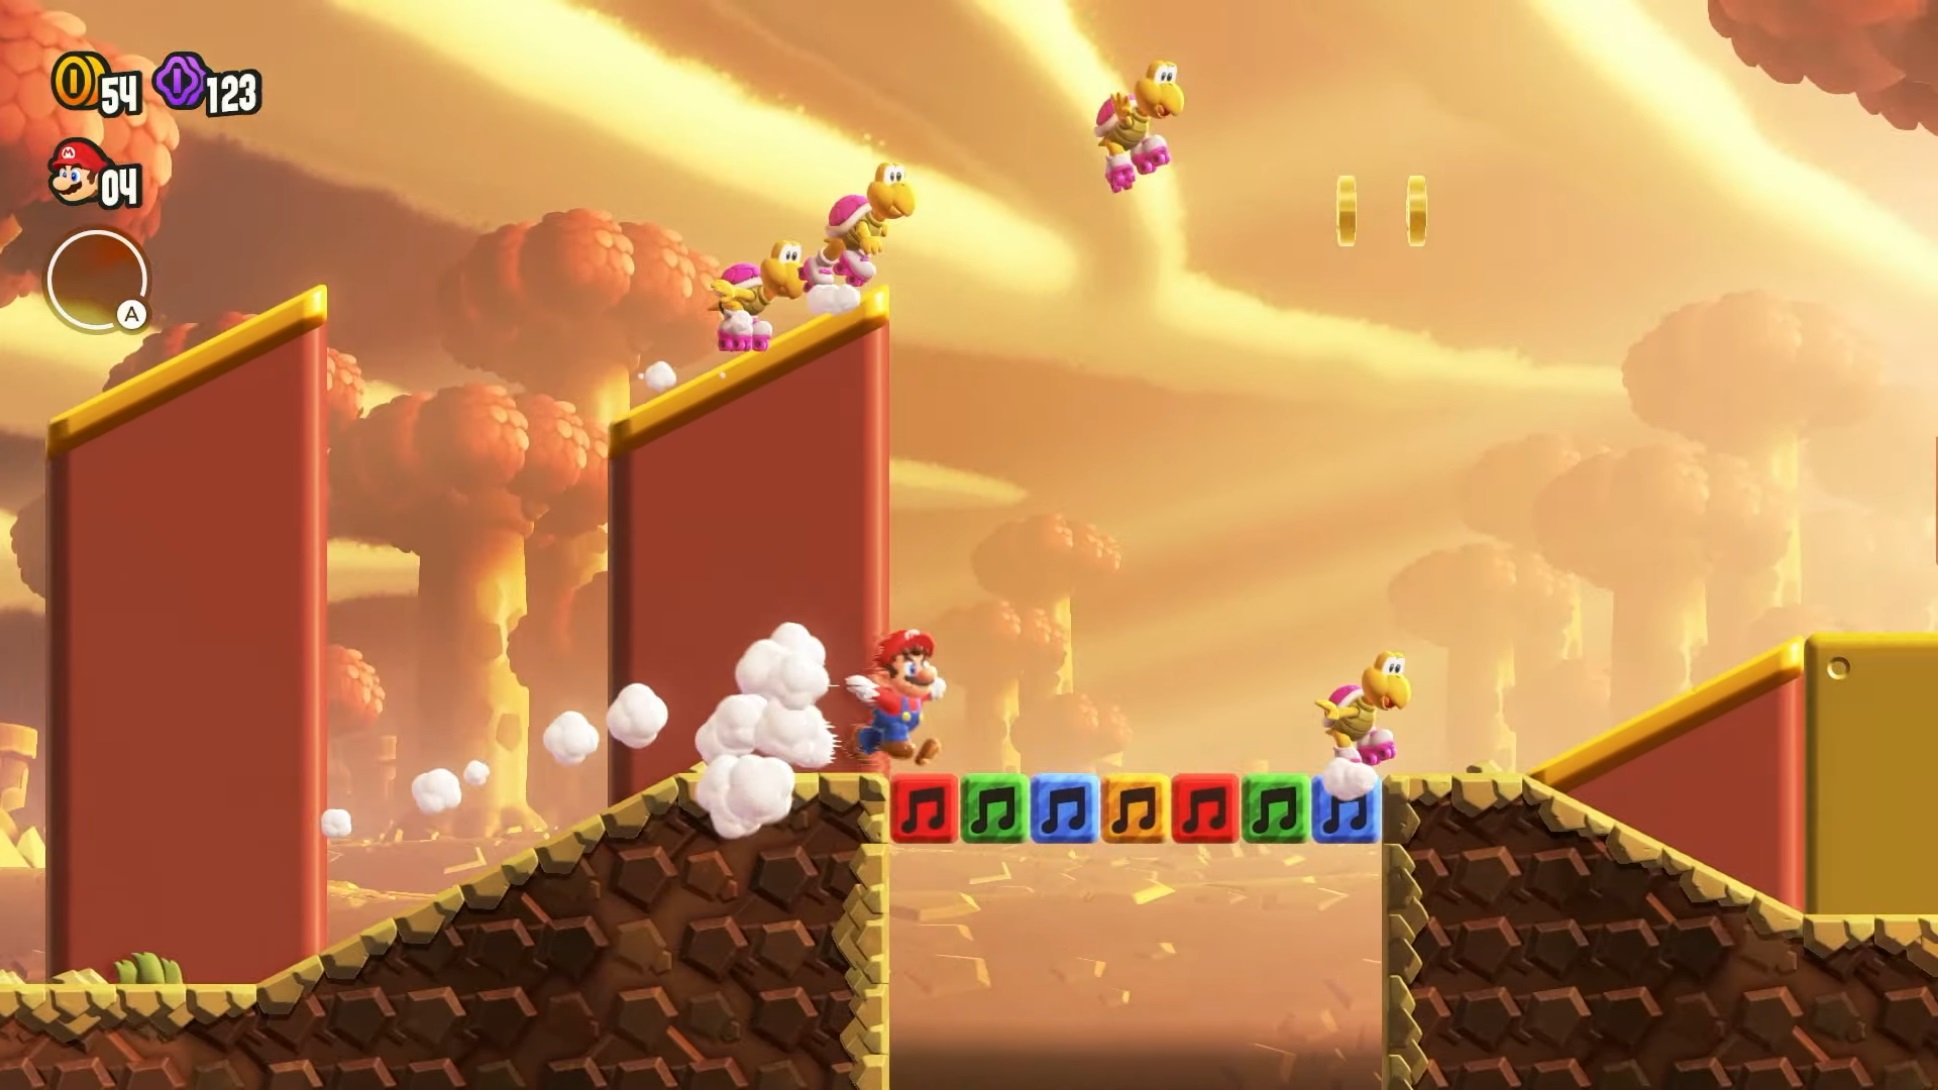 Jeux vidéo. Sortie de Super Mario Wonder sur Switch : on l'a testé pour vous